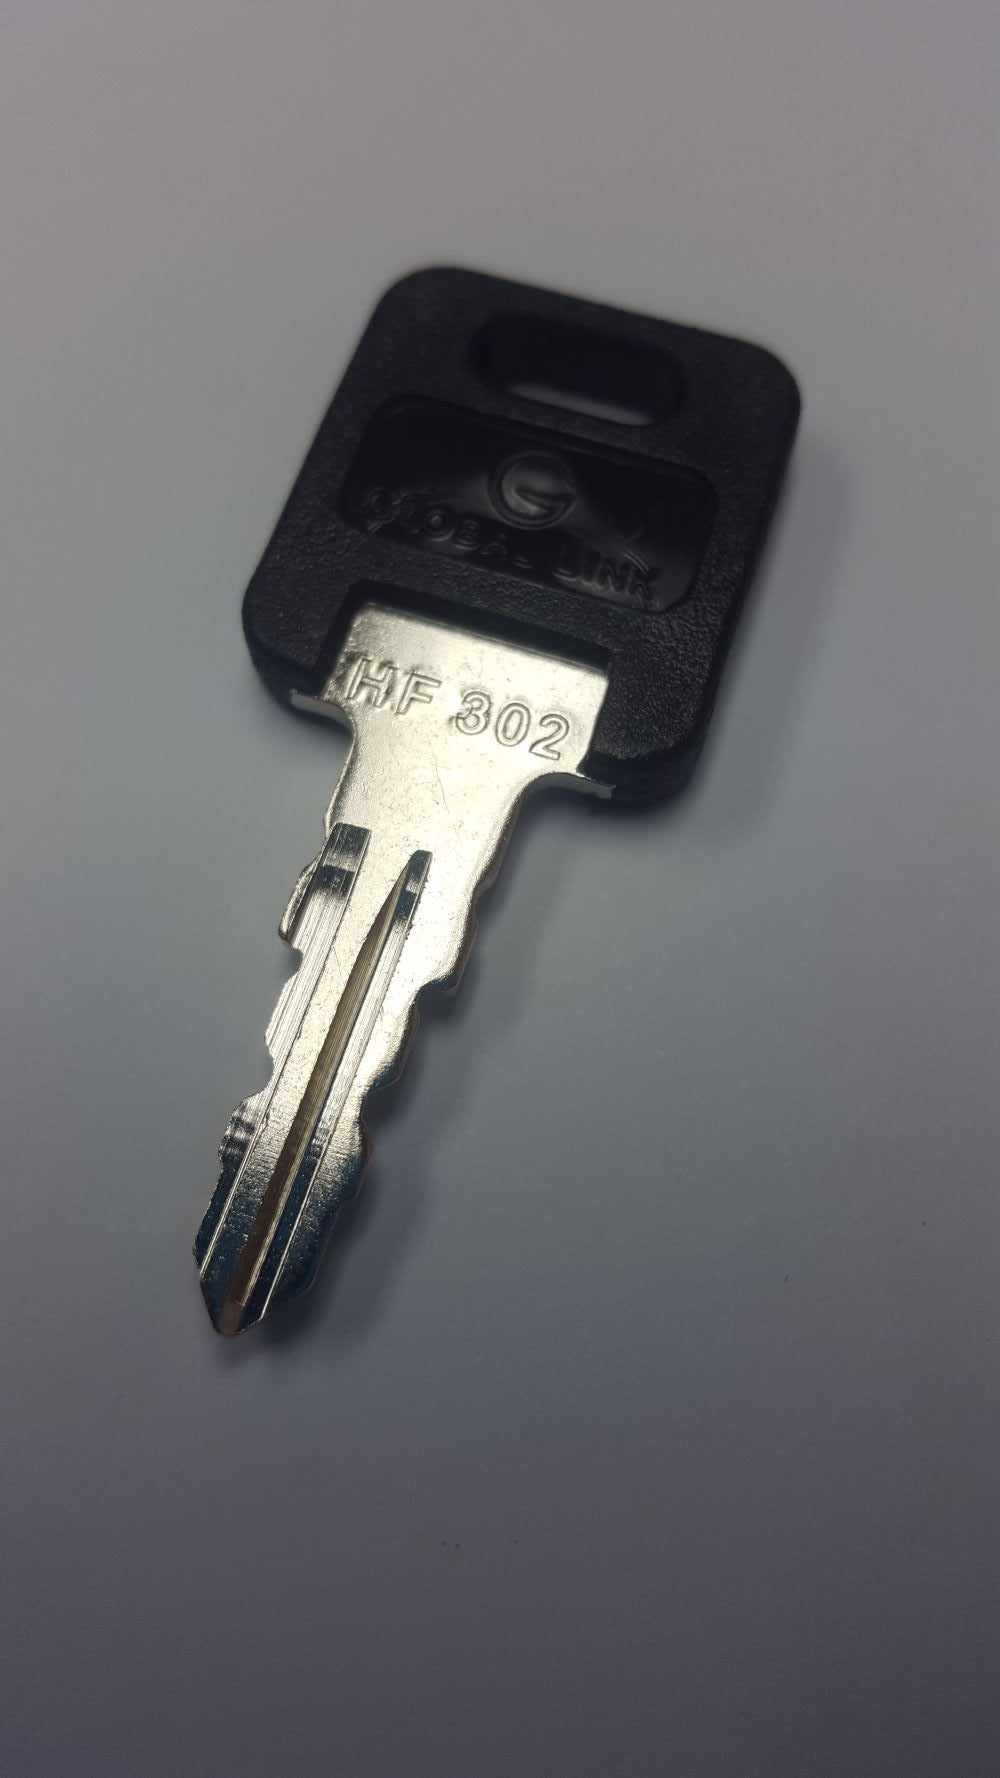 CPG KEY-HF-302 Pre-cut Stamped FIC Replacemnt HF302 Key